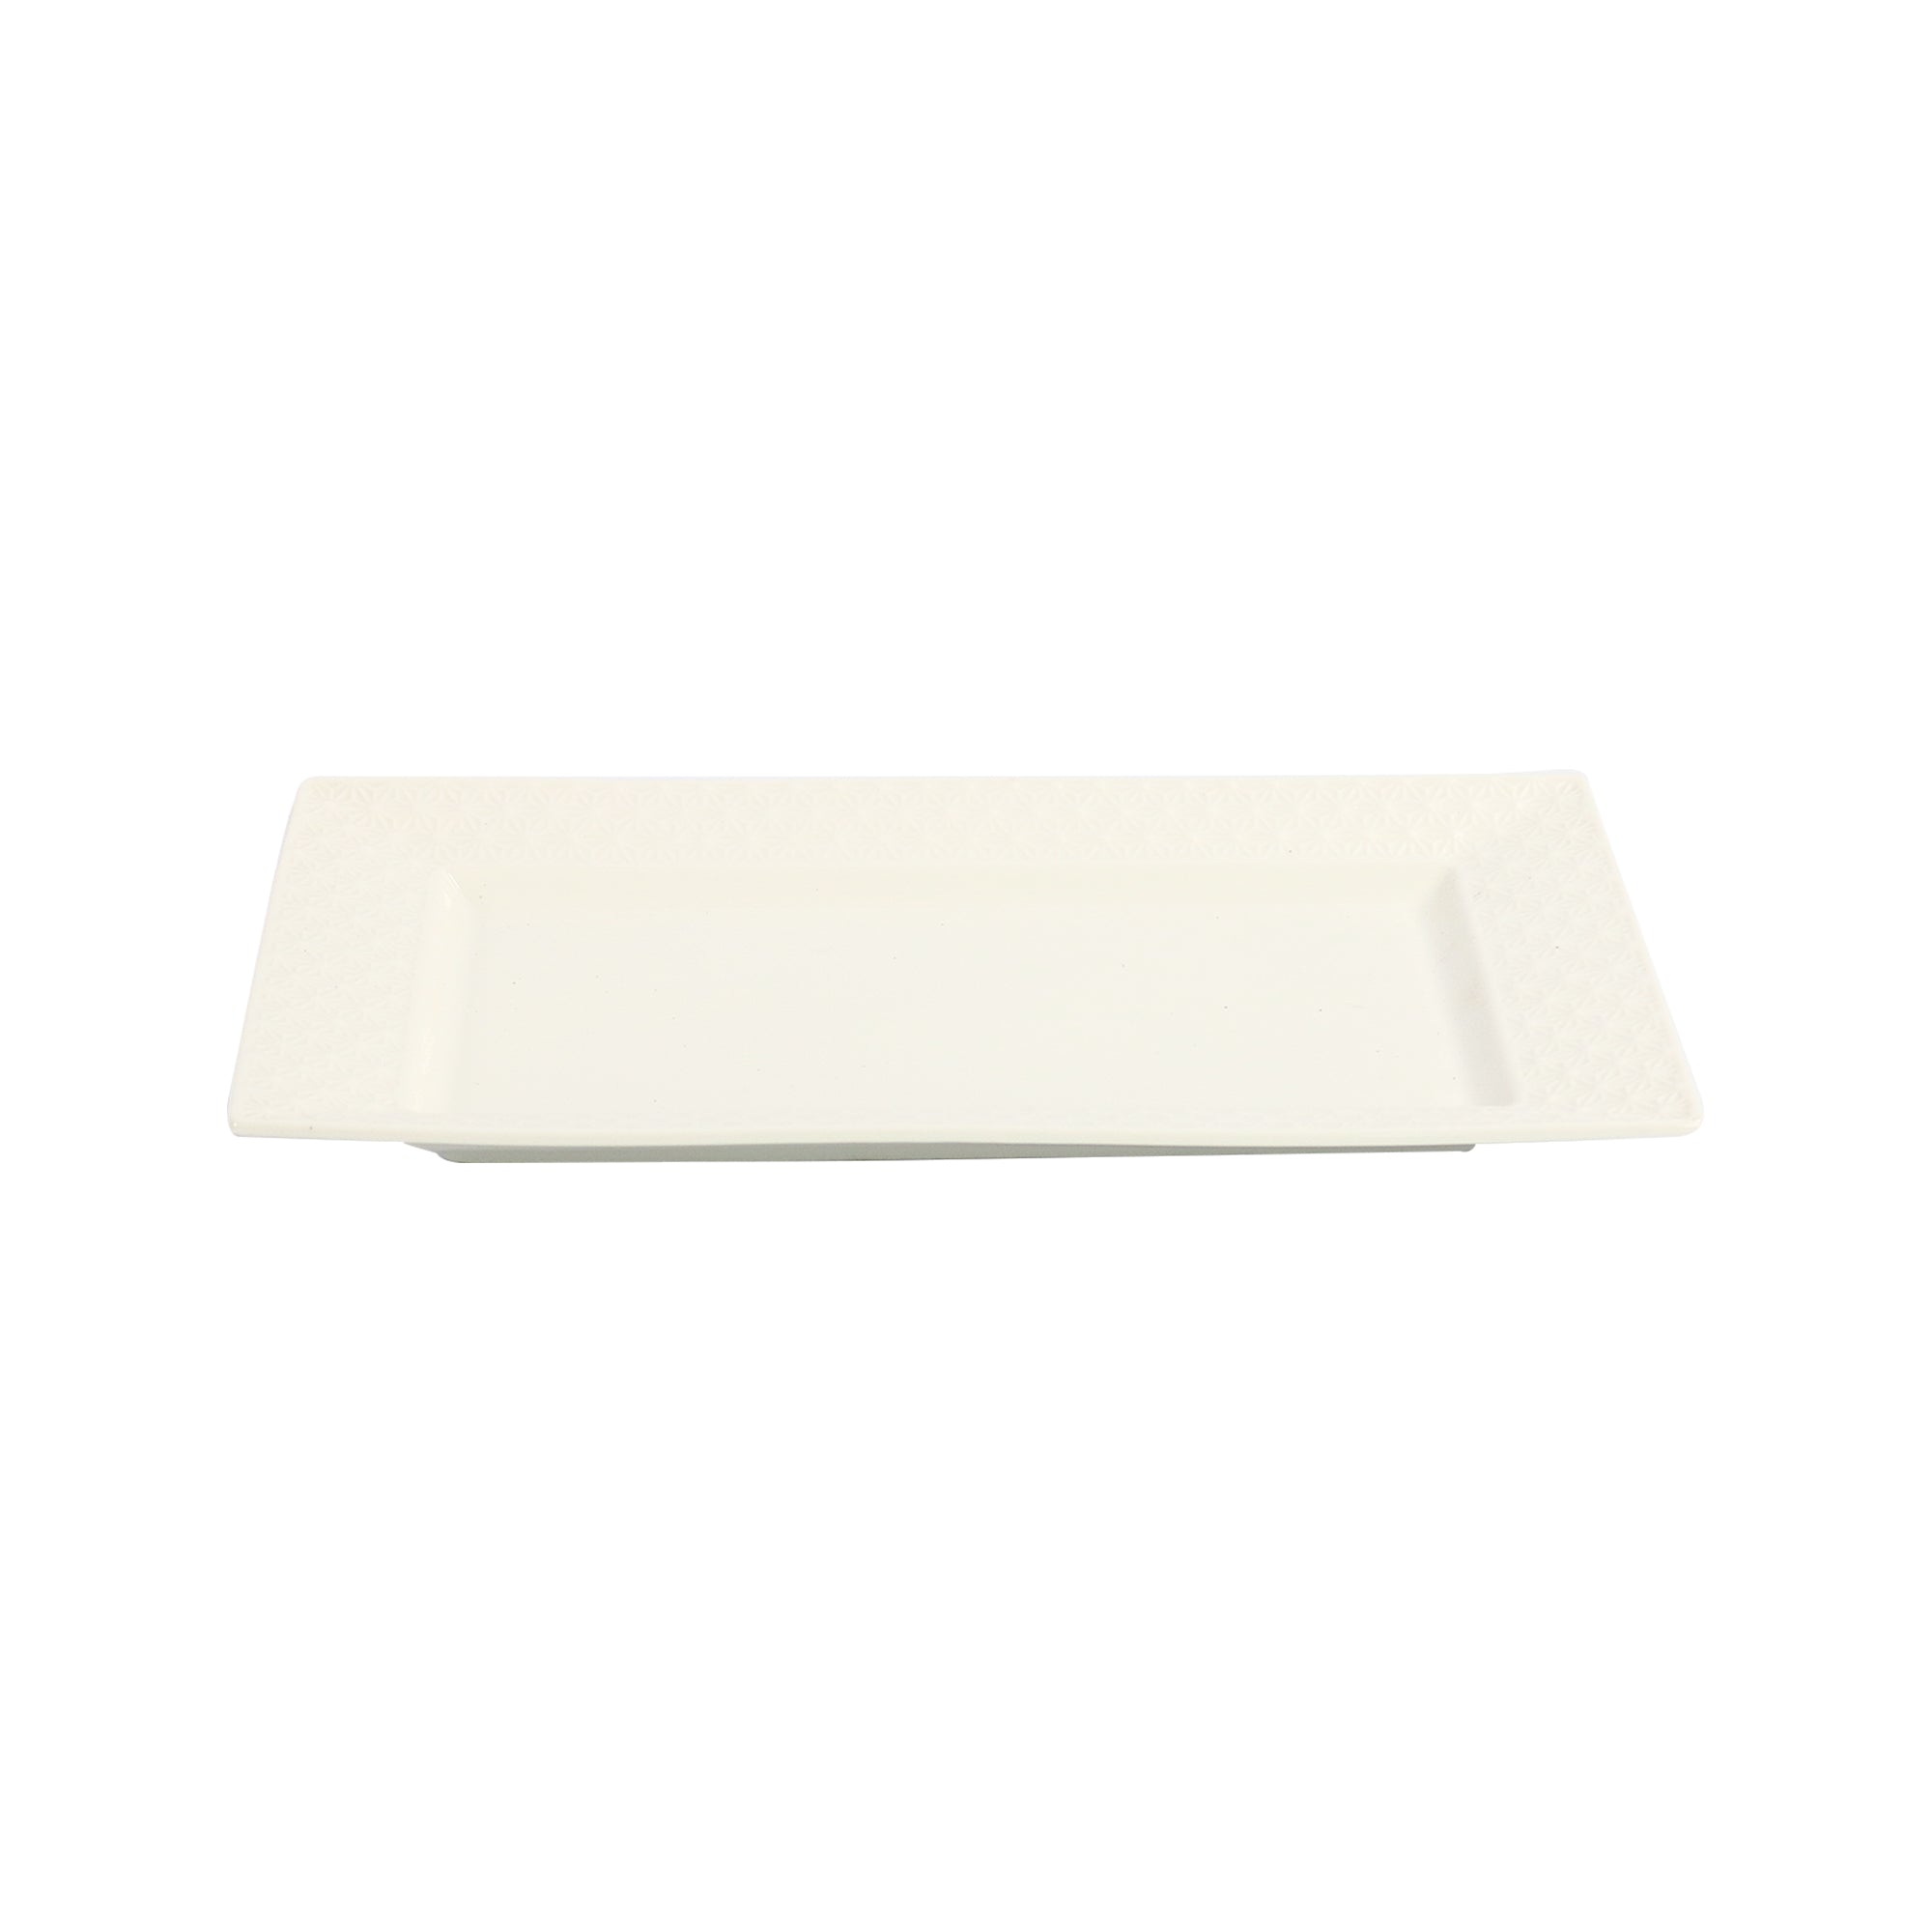 Ceramic Platter Rectangular 30.5x18.5x2cm 30884